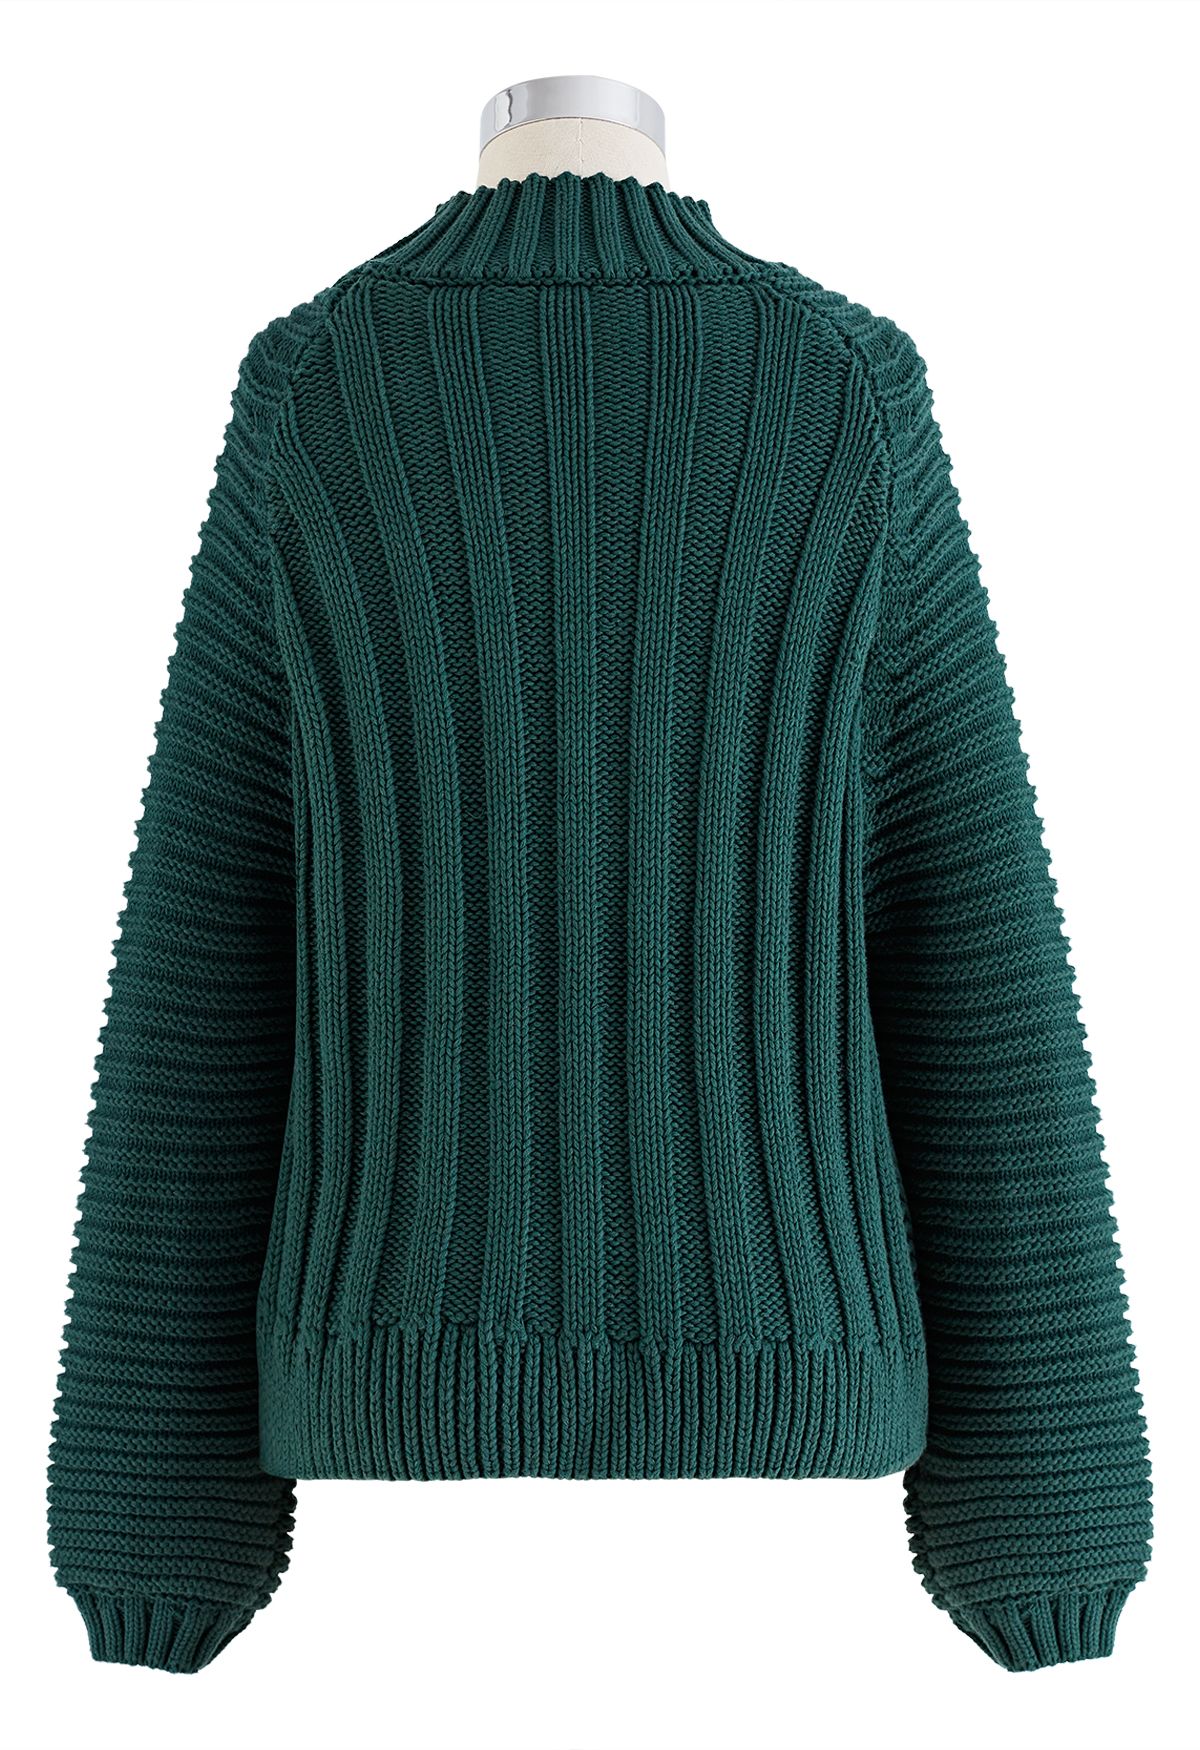 Suéter de malha grossa de gola alta com nervuras exagerada em verde escuro